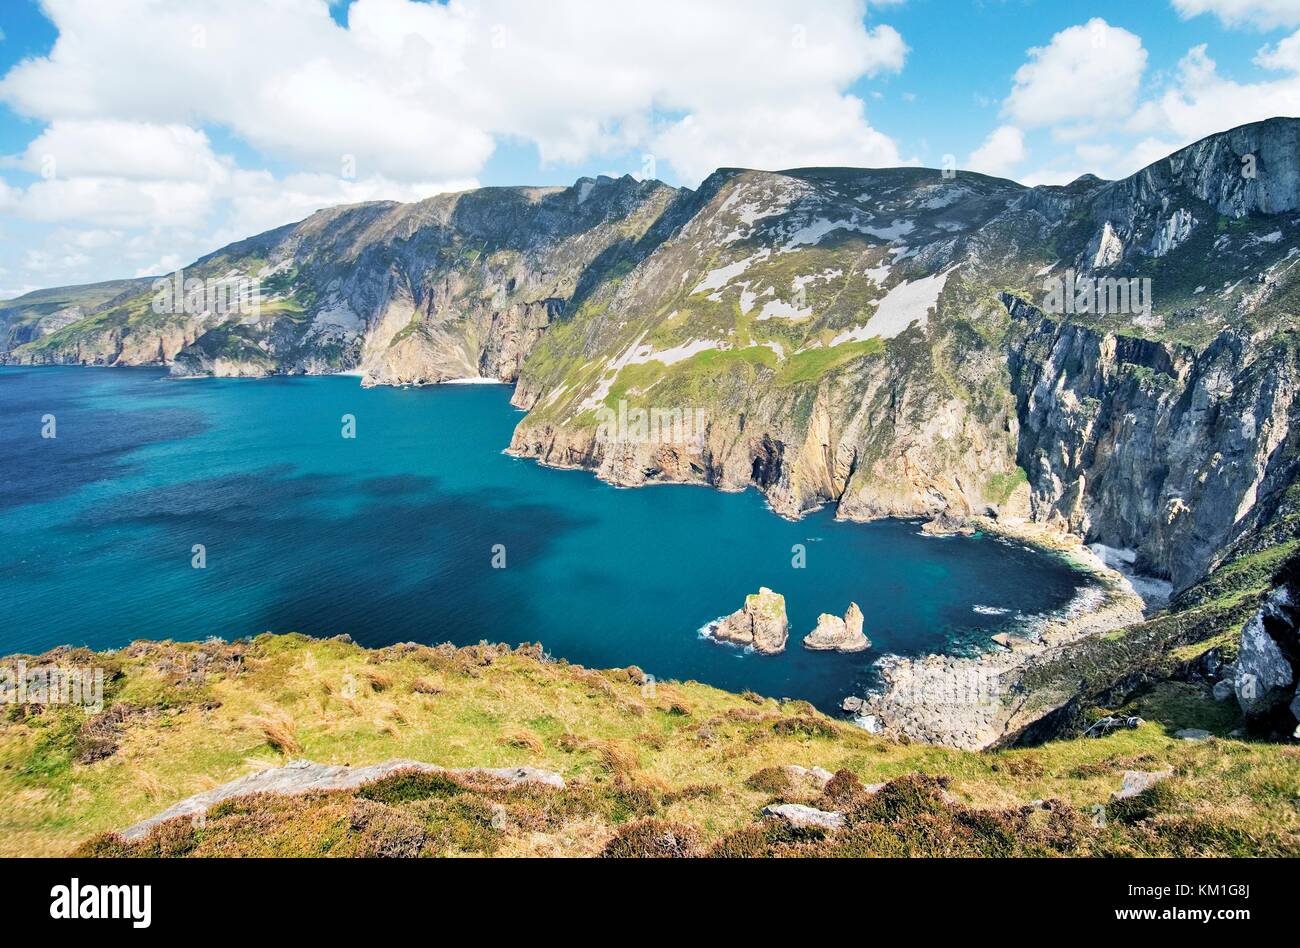 Slieve League Cliffs, Irlands höchsten, von carrigan Head gesehen, steigen aus dem Atlantik westlich von killybegs in S.w. Donegal. Stockfoto